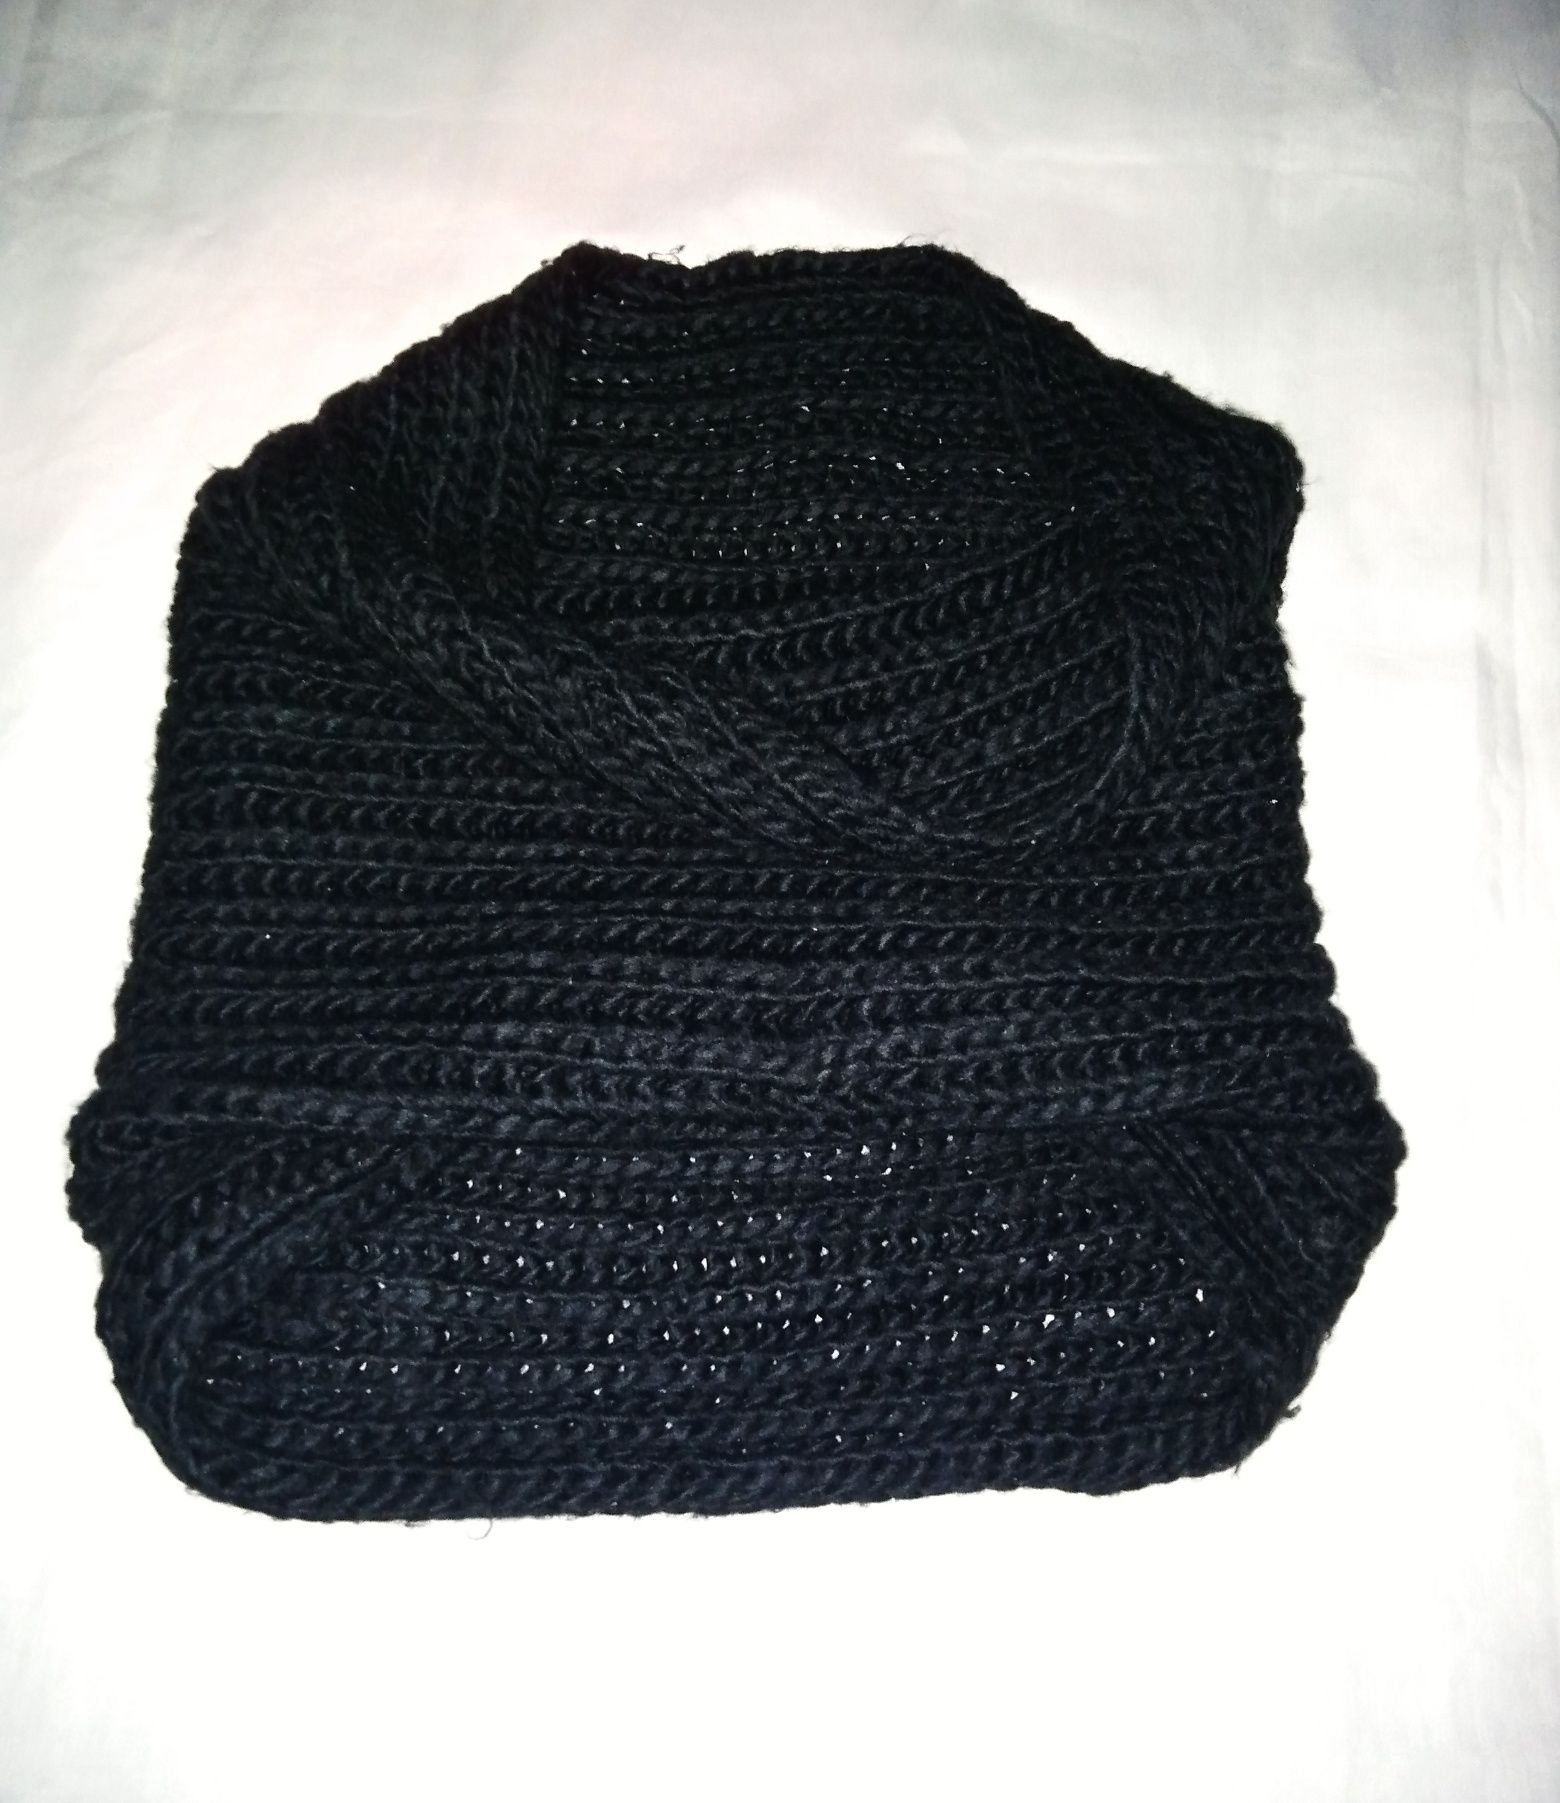 Gola-cachecol lã preto, marca Accessorize.